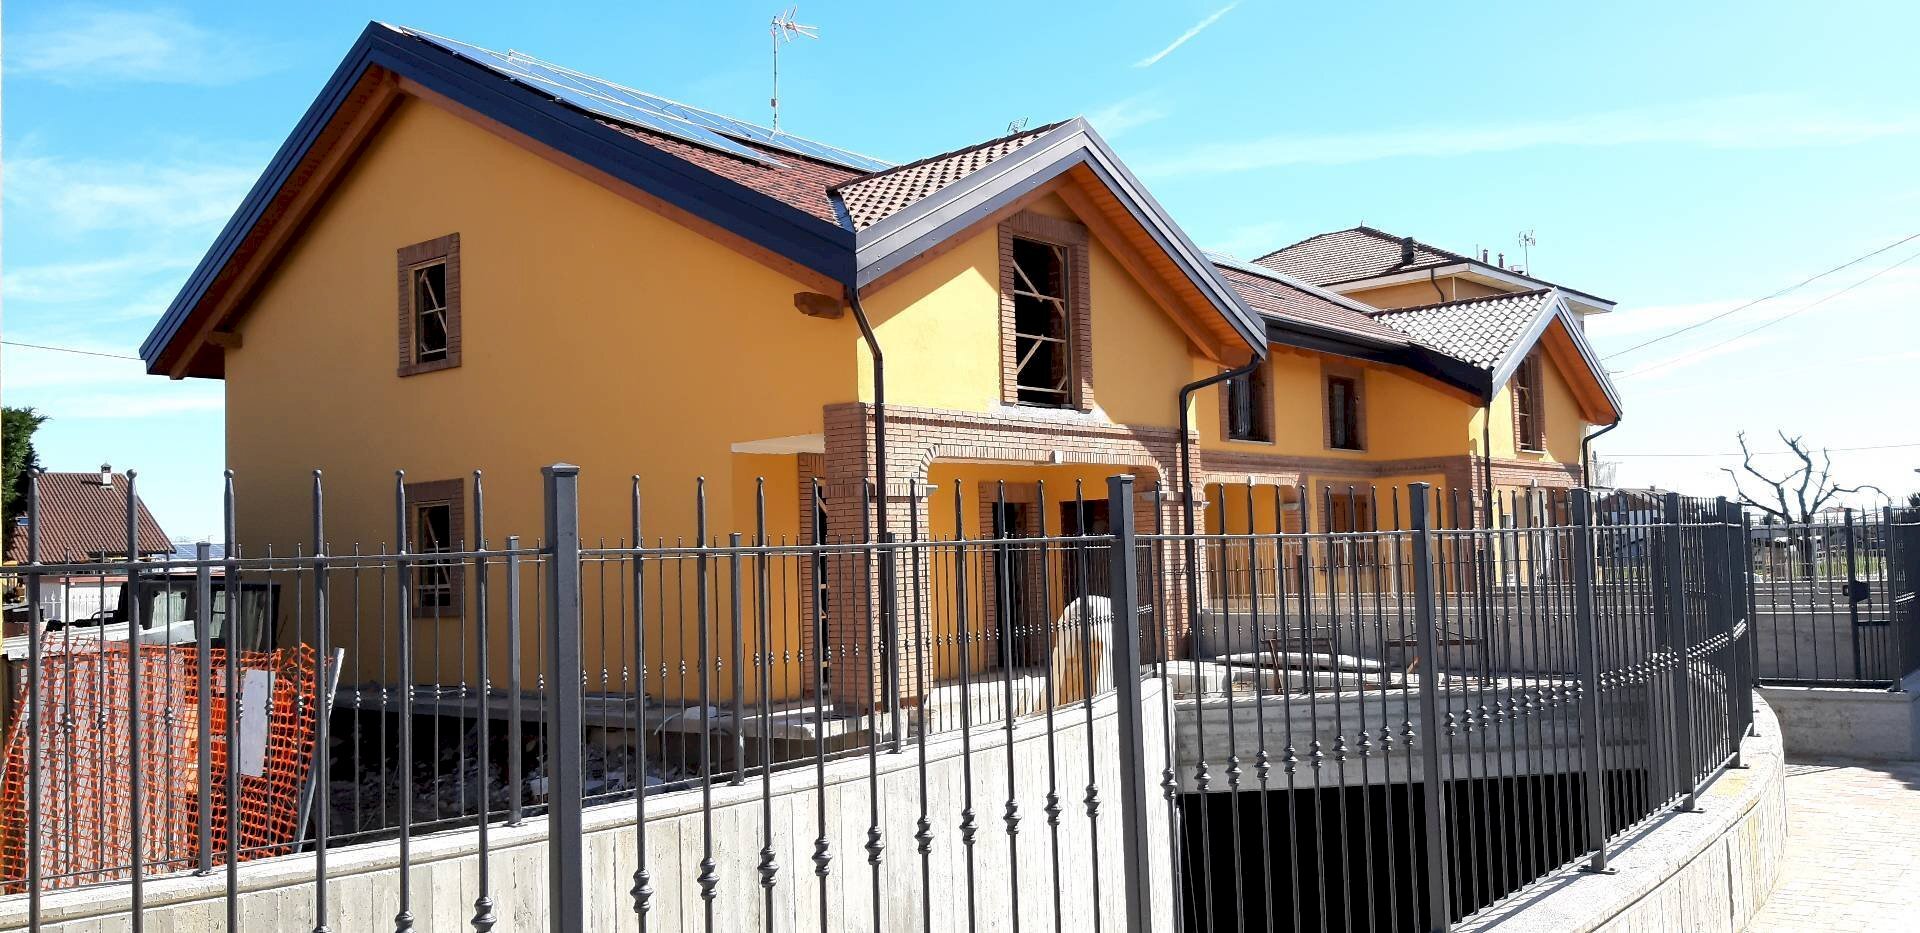 Vendita Villa a Schiera VIA MARTIRI DELLA LIBERTA', San Maurizio Canavese